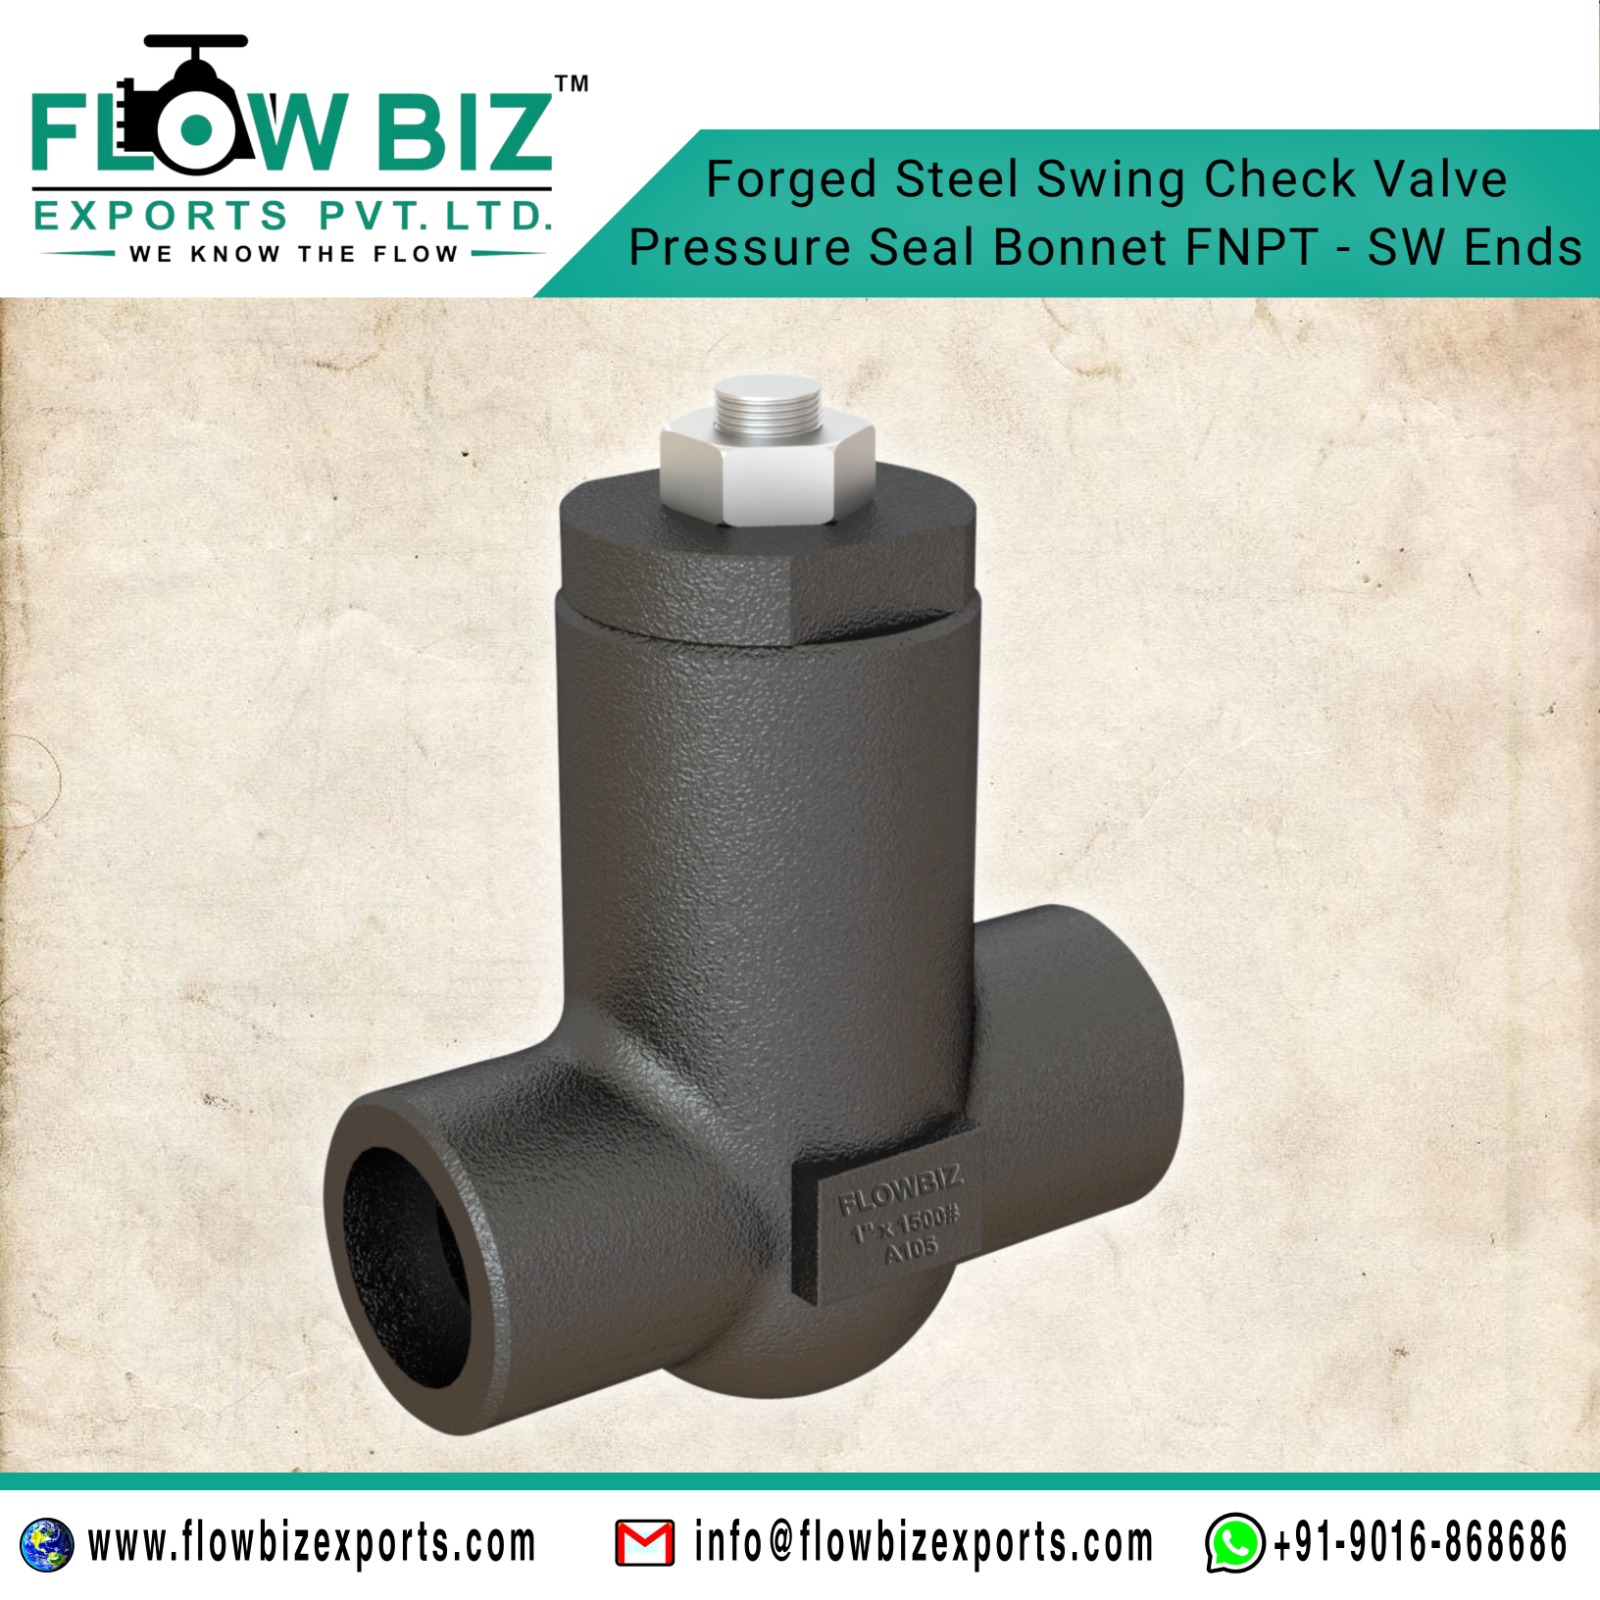 nrv valve manufacturer - Flowbiz